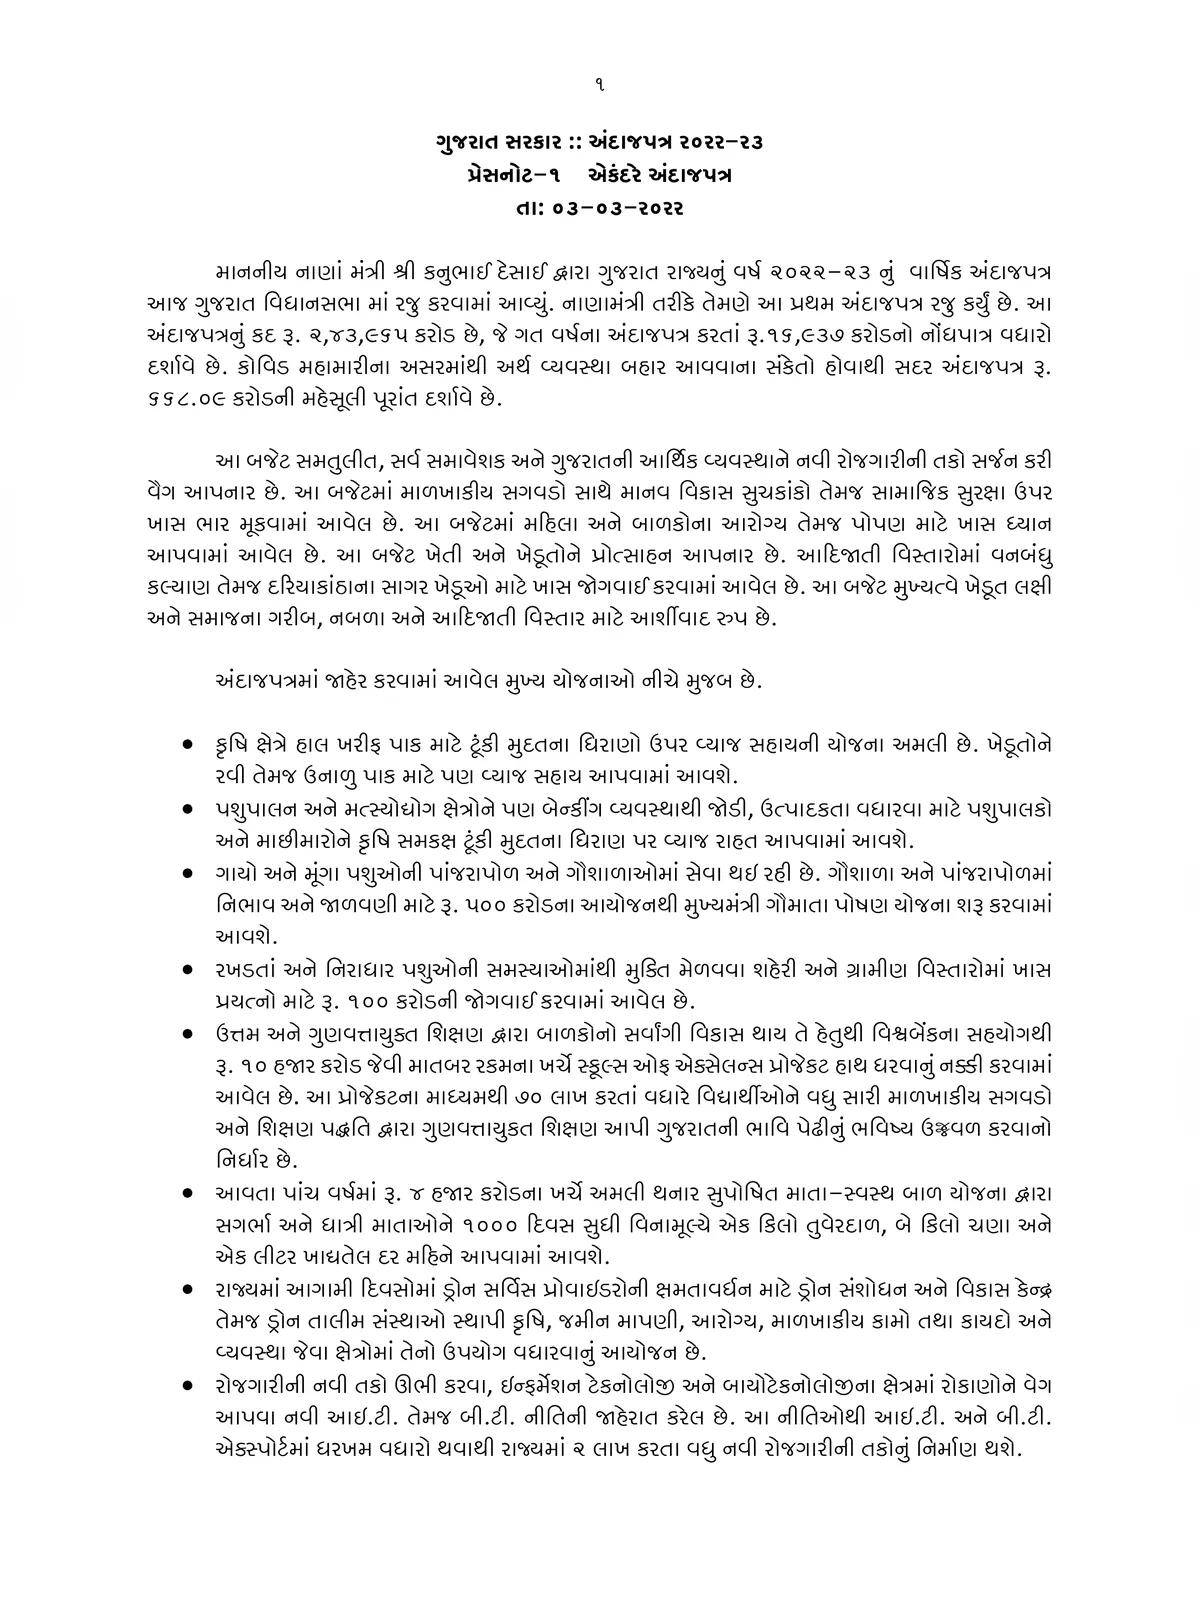 Gujarat Budget 2022-23